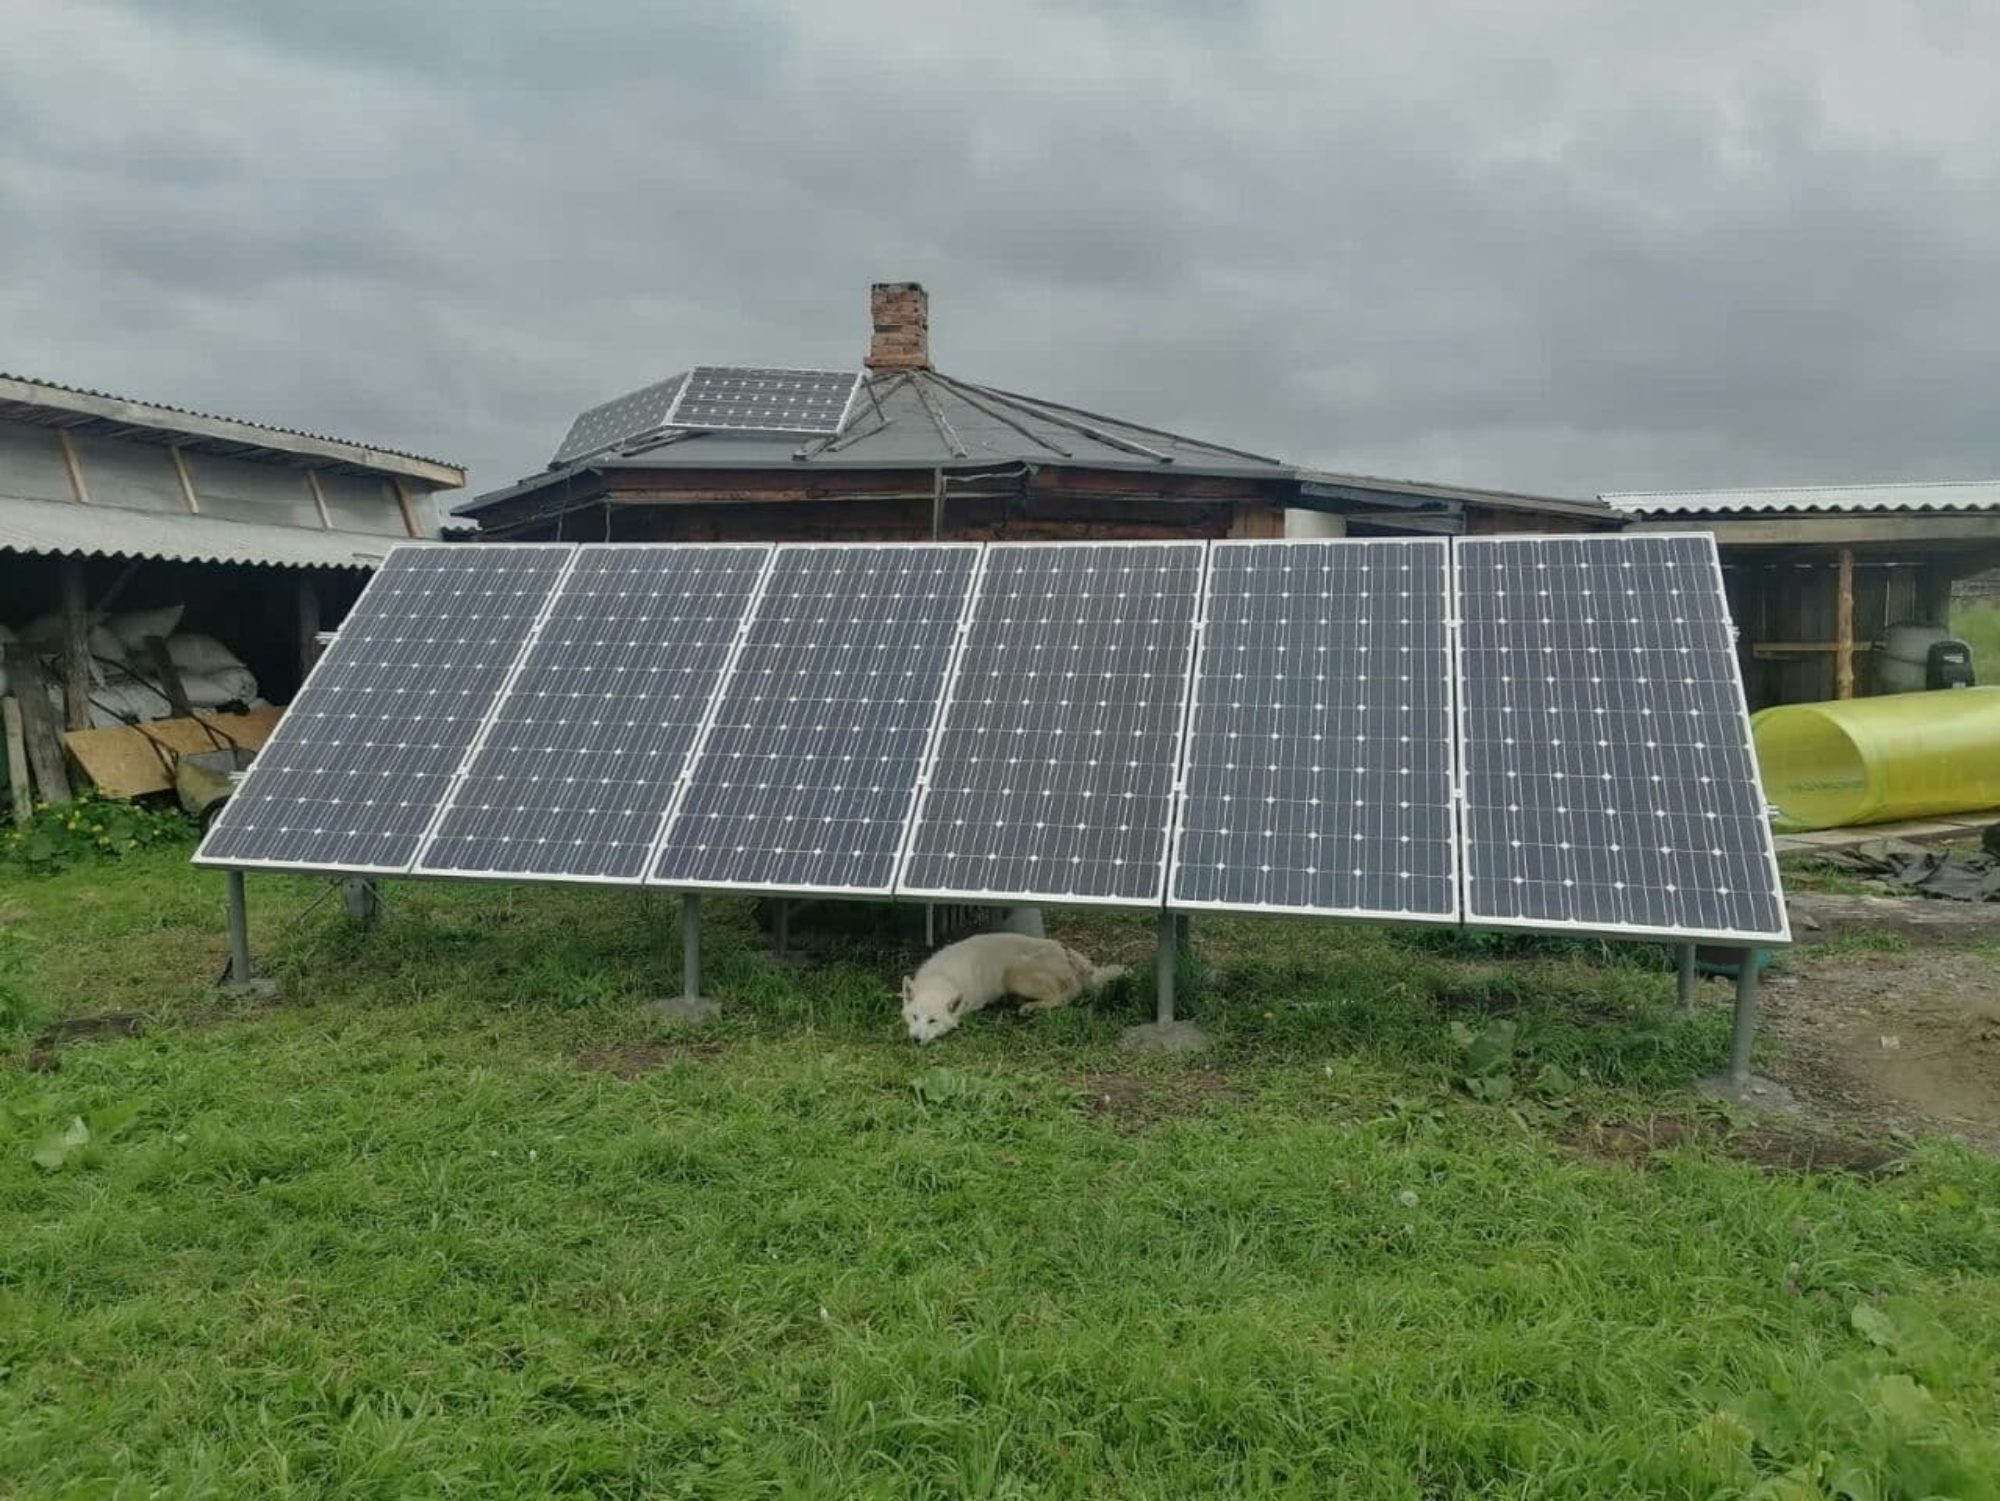 Автономная солнечная электростанция. Республика Хакасия, Таштыпский район, хутор около деревни Харой